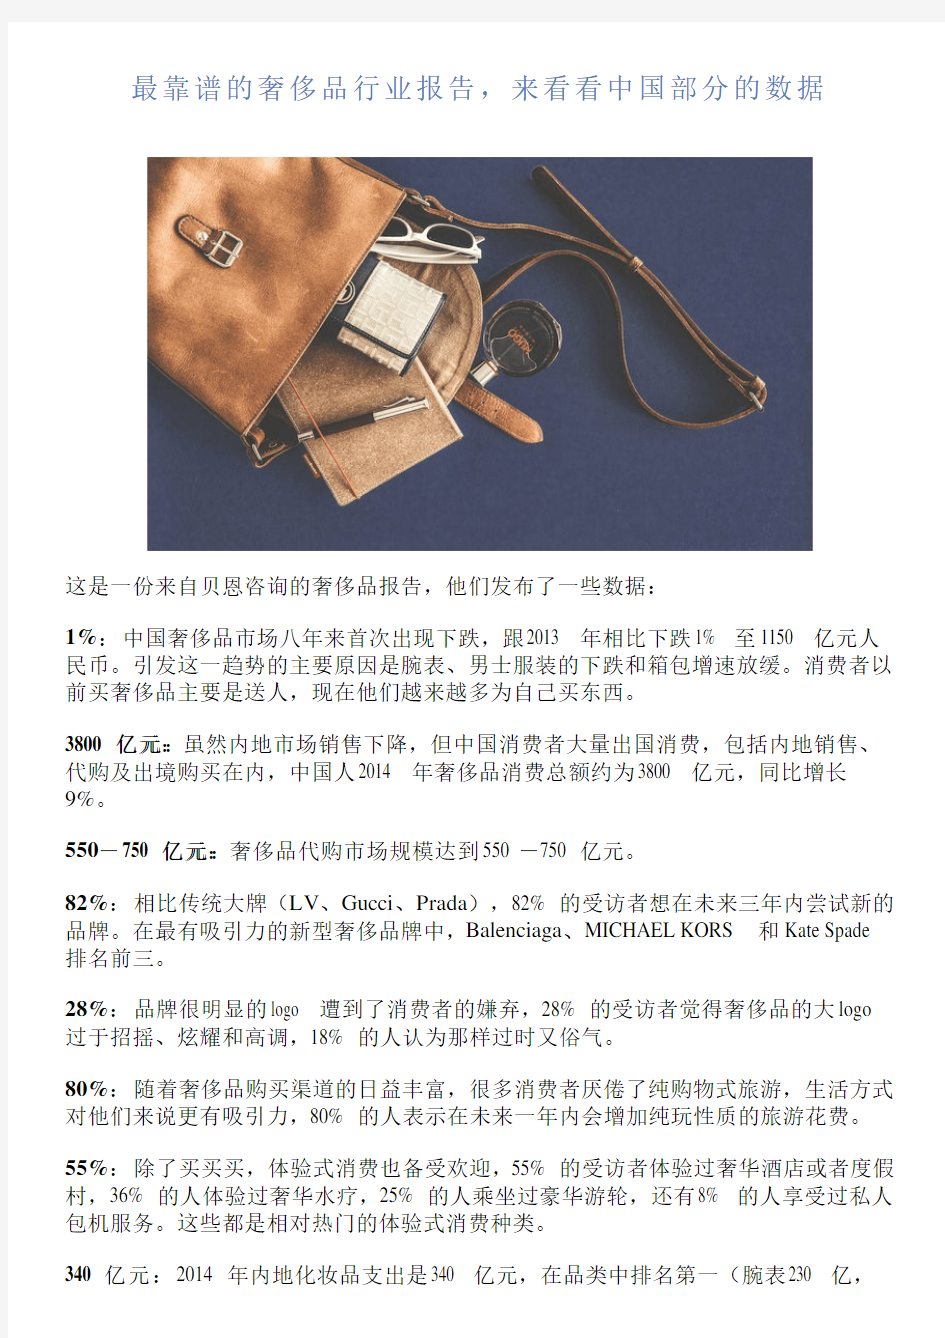 最靠谱的奢侈品行业报告,来看看中国部分的数据